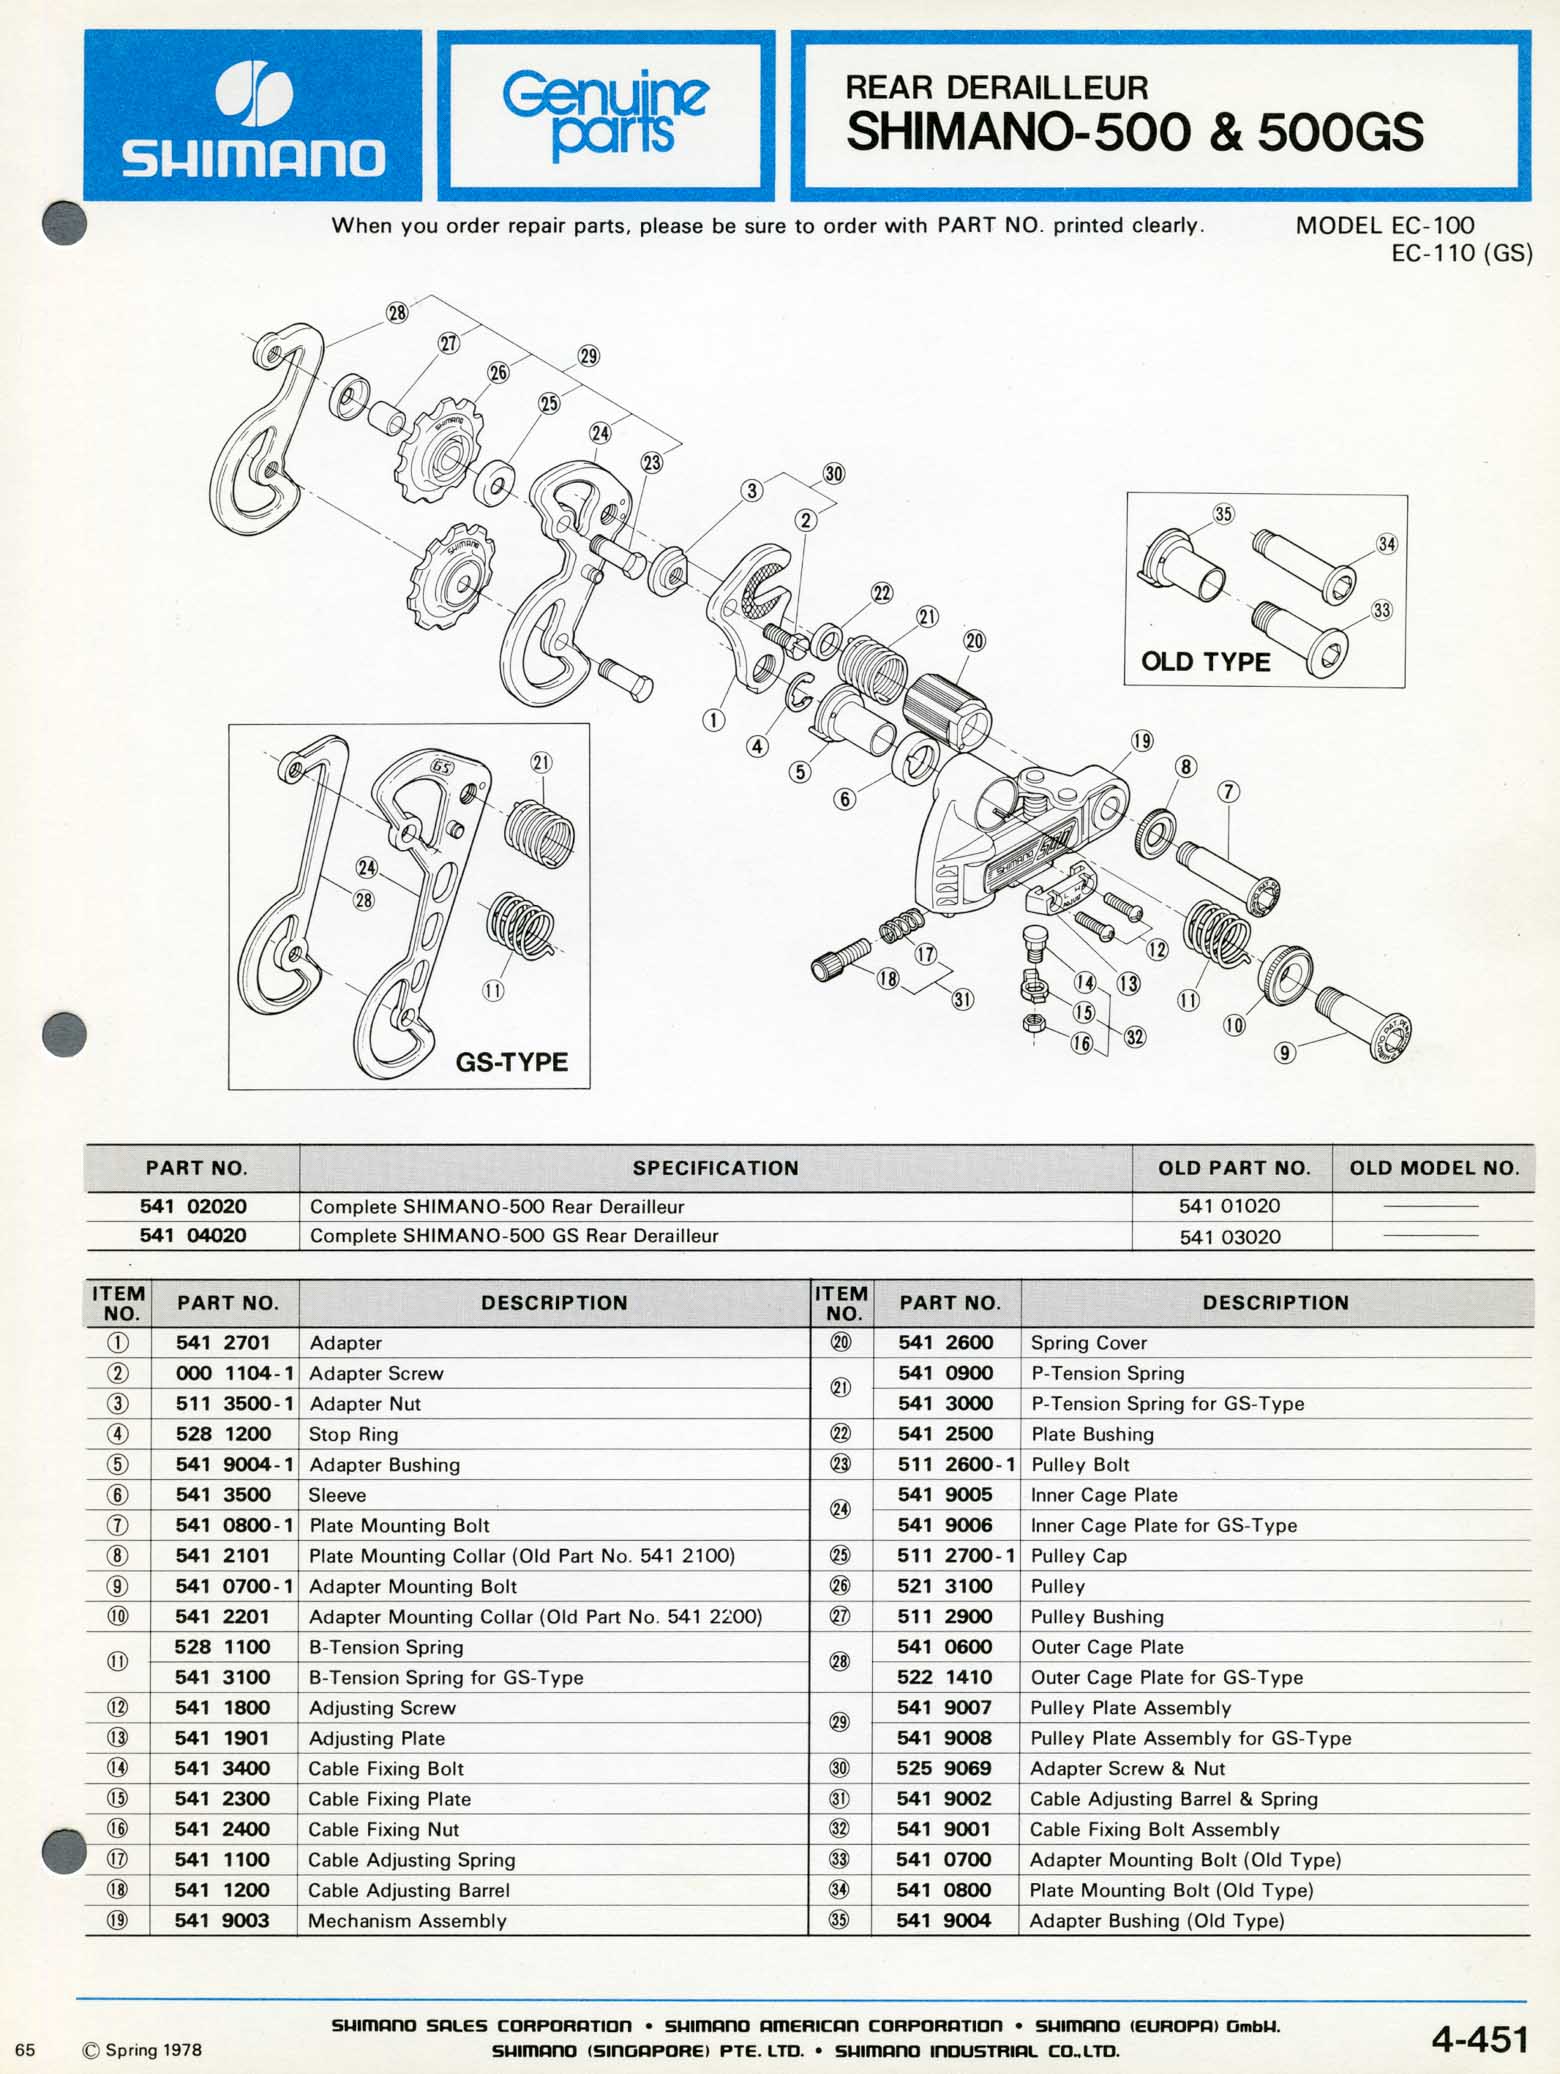 Shimano Bicycle Parts - 1978 scan 10 main image